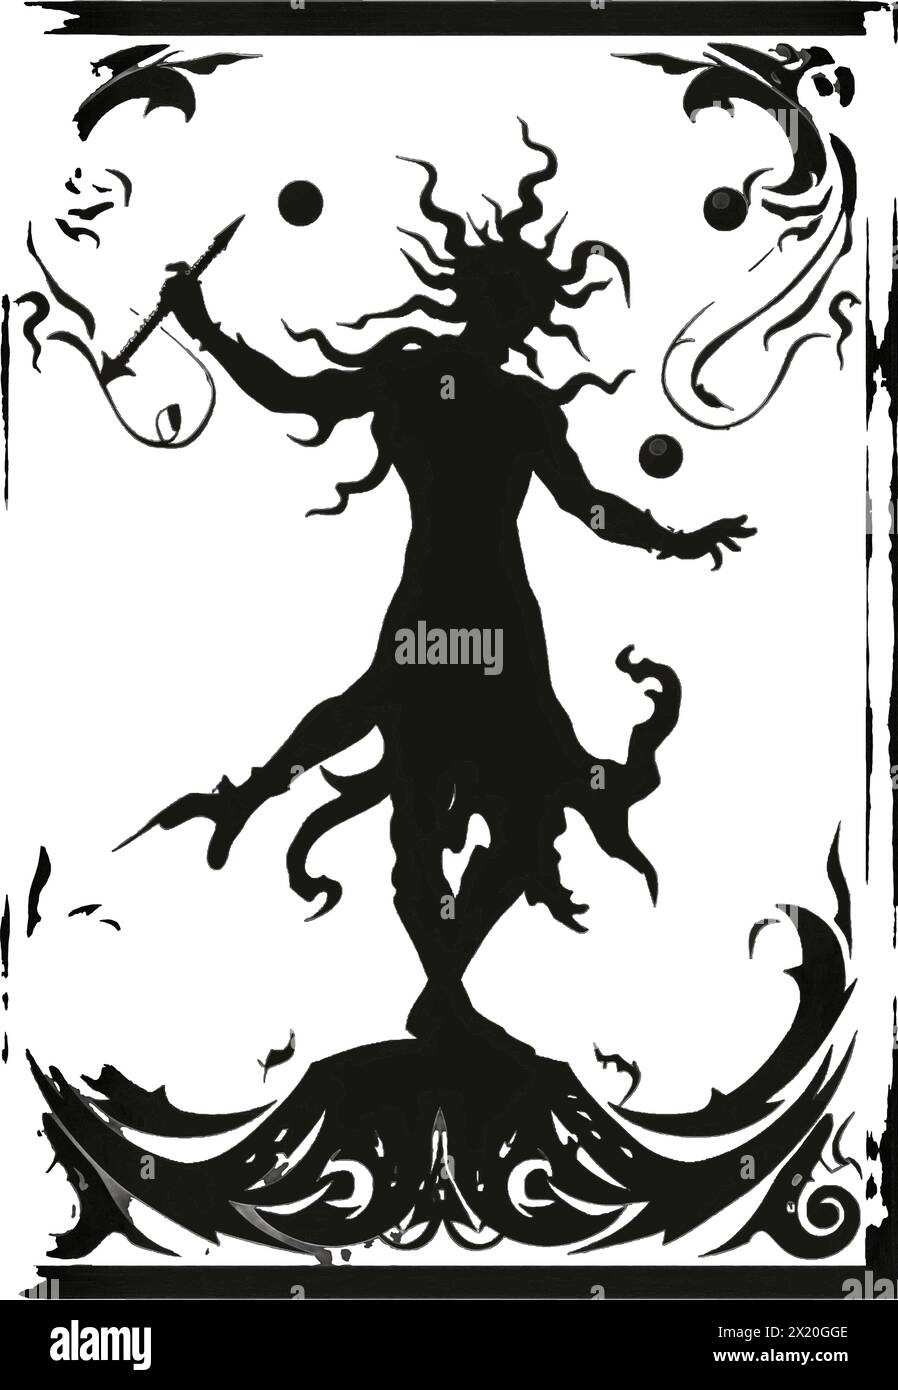 Illustration vectorielle d'un clown, bouffon, écuyer en silhouette noire sur un fond blanc propre, capturant les formes gracieuses de ce vecteur. Illustration de Vecteur